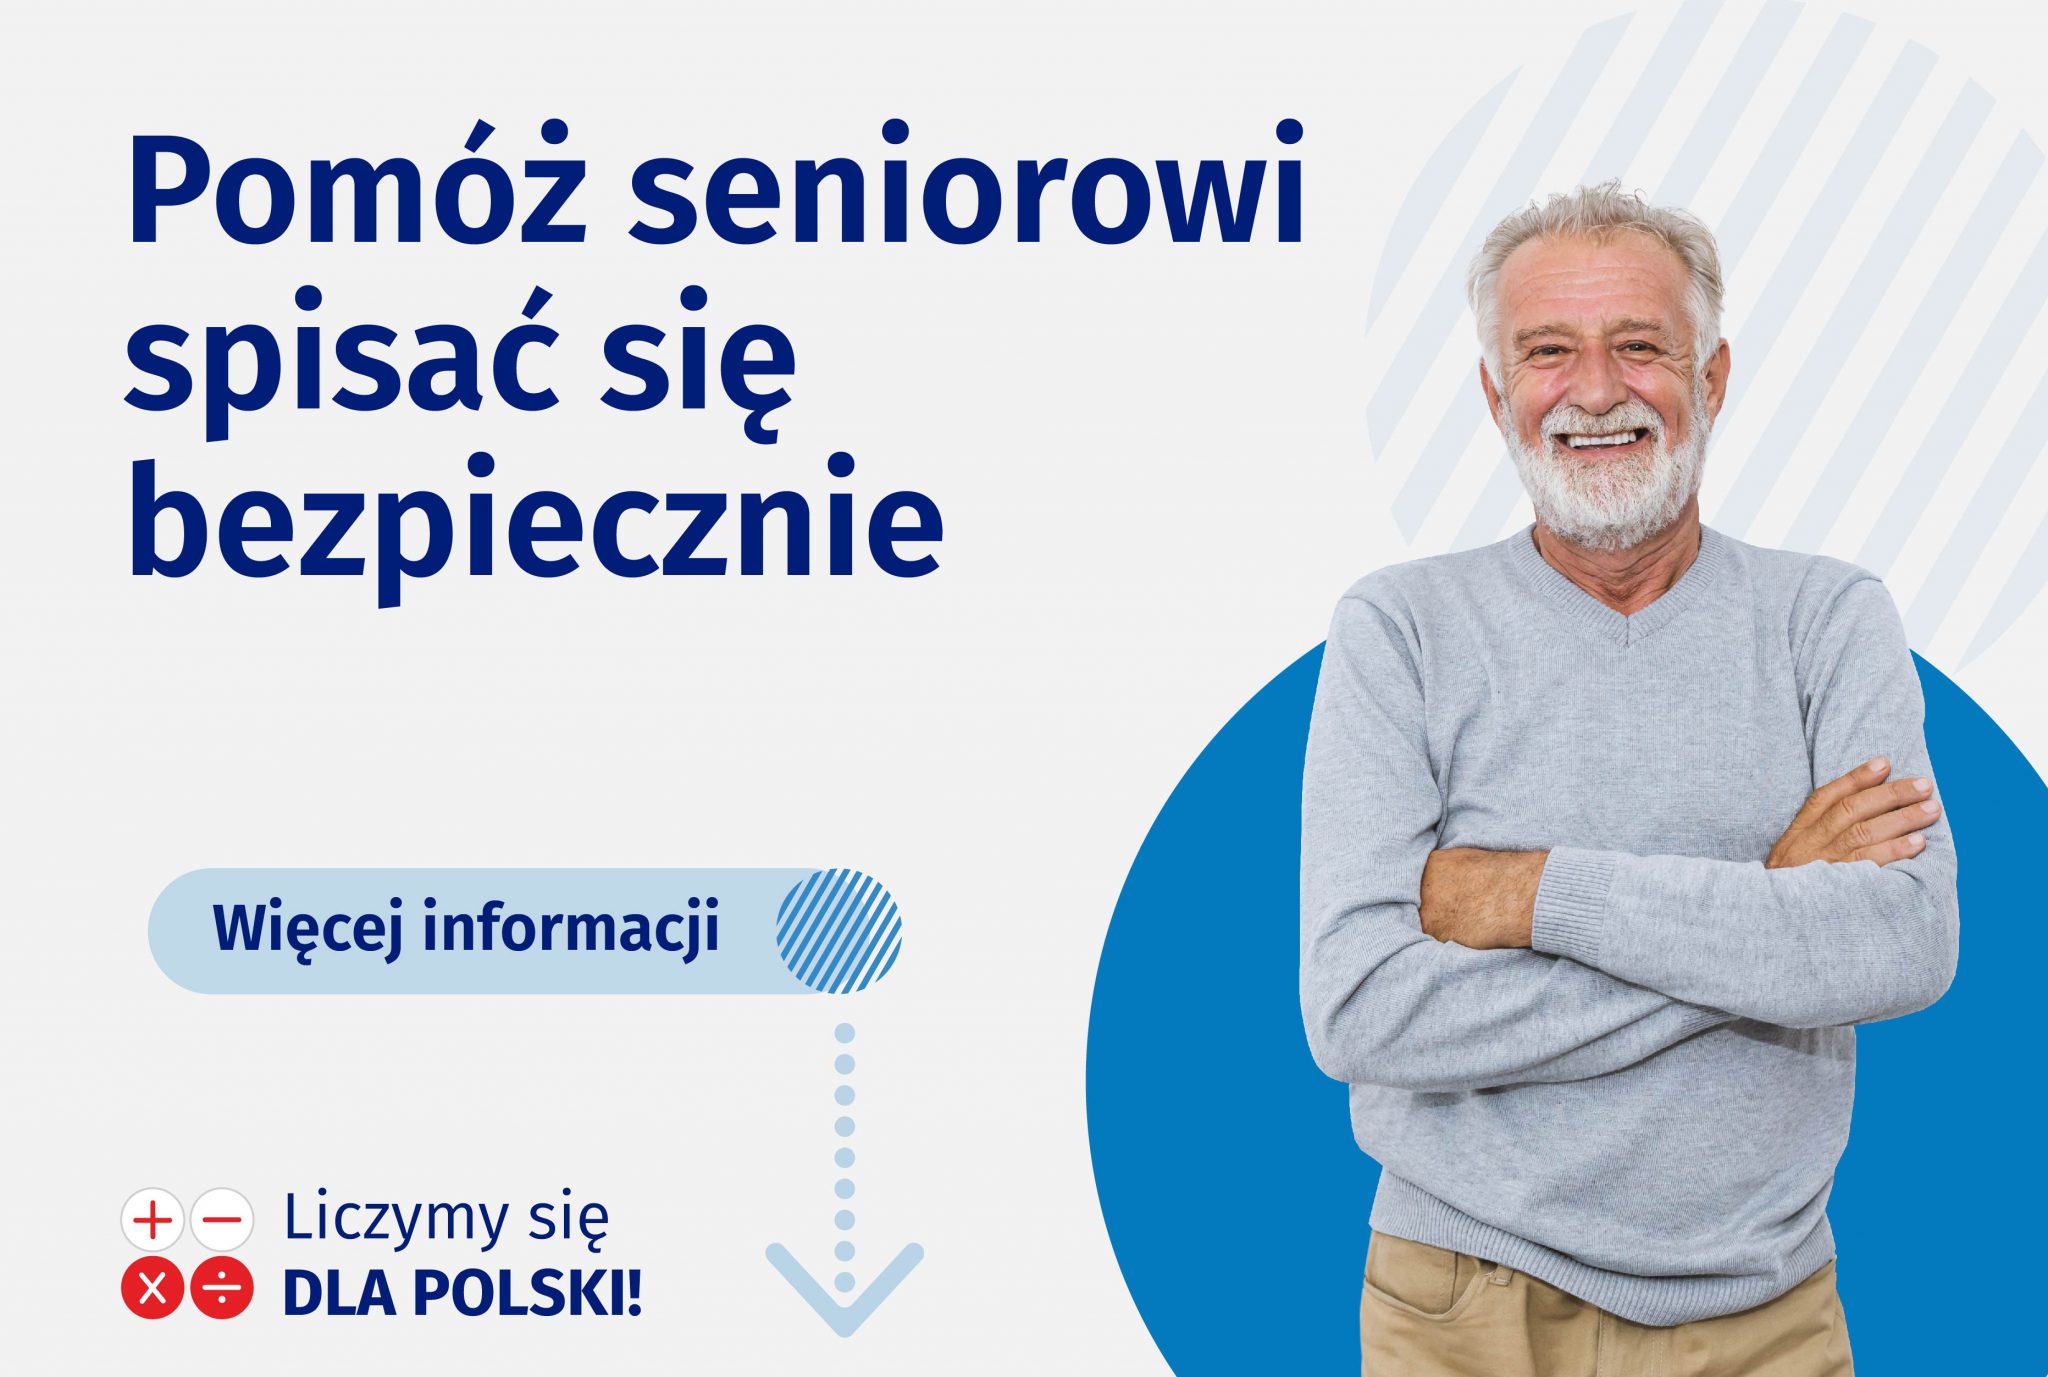 starszy mężczyzna stoi z założonymi rękoma, uśmiecha się, po lewej napis "Pomóż seniorowi spisać się bezpiecznie" oraz napis "Liczymy się dla Polski". 